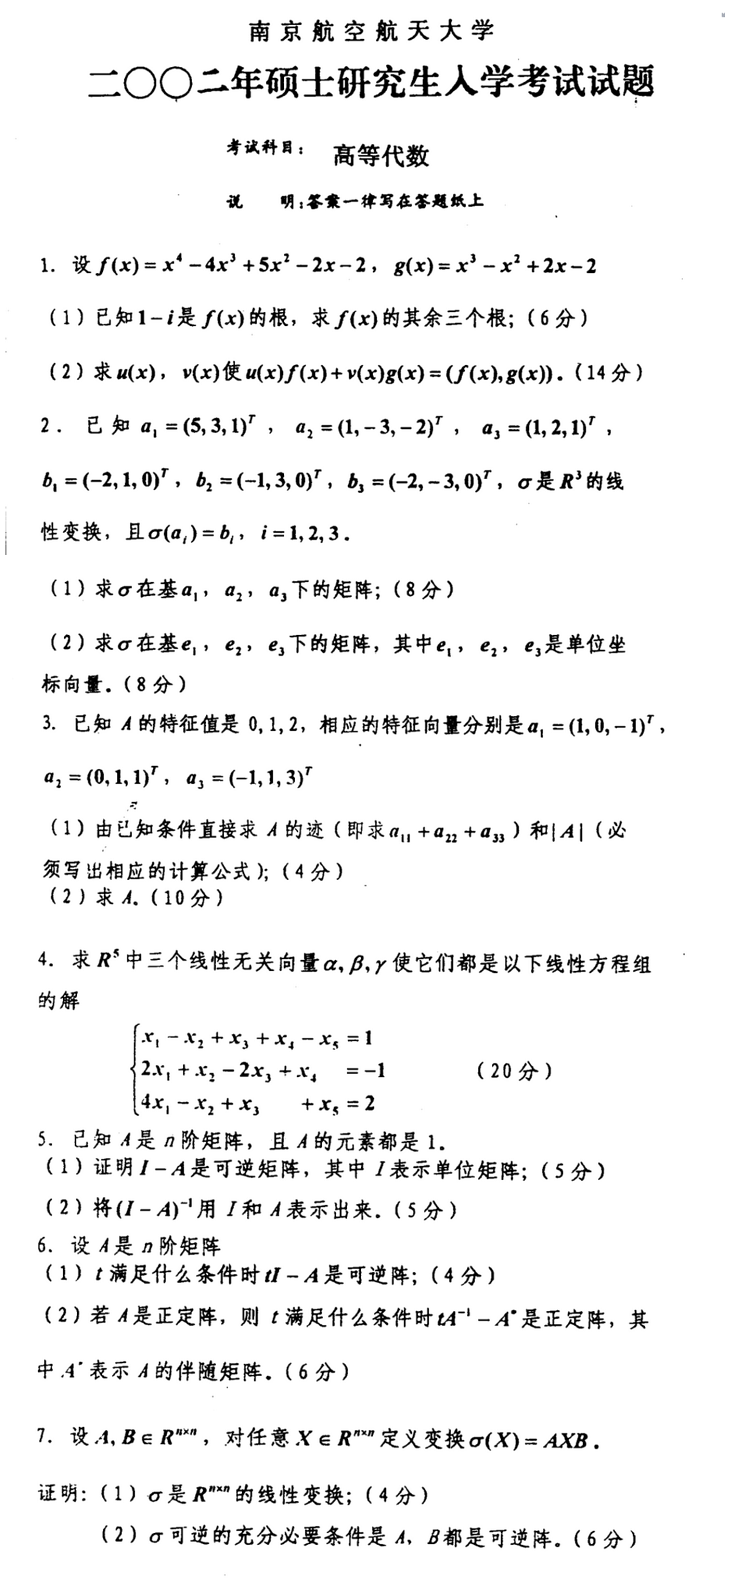 2002南京航空航天大学考研数学真题（高等代数）.png